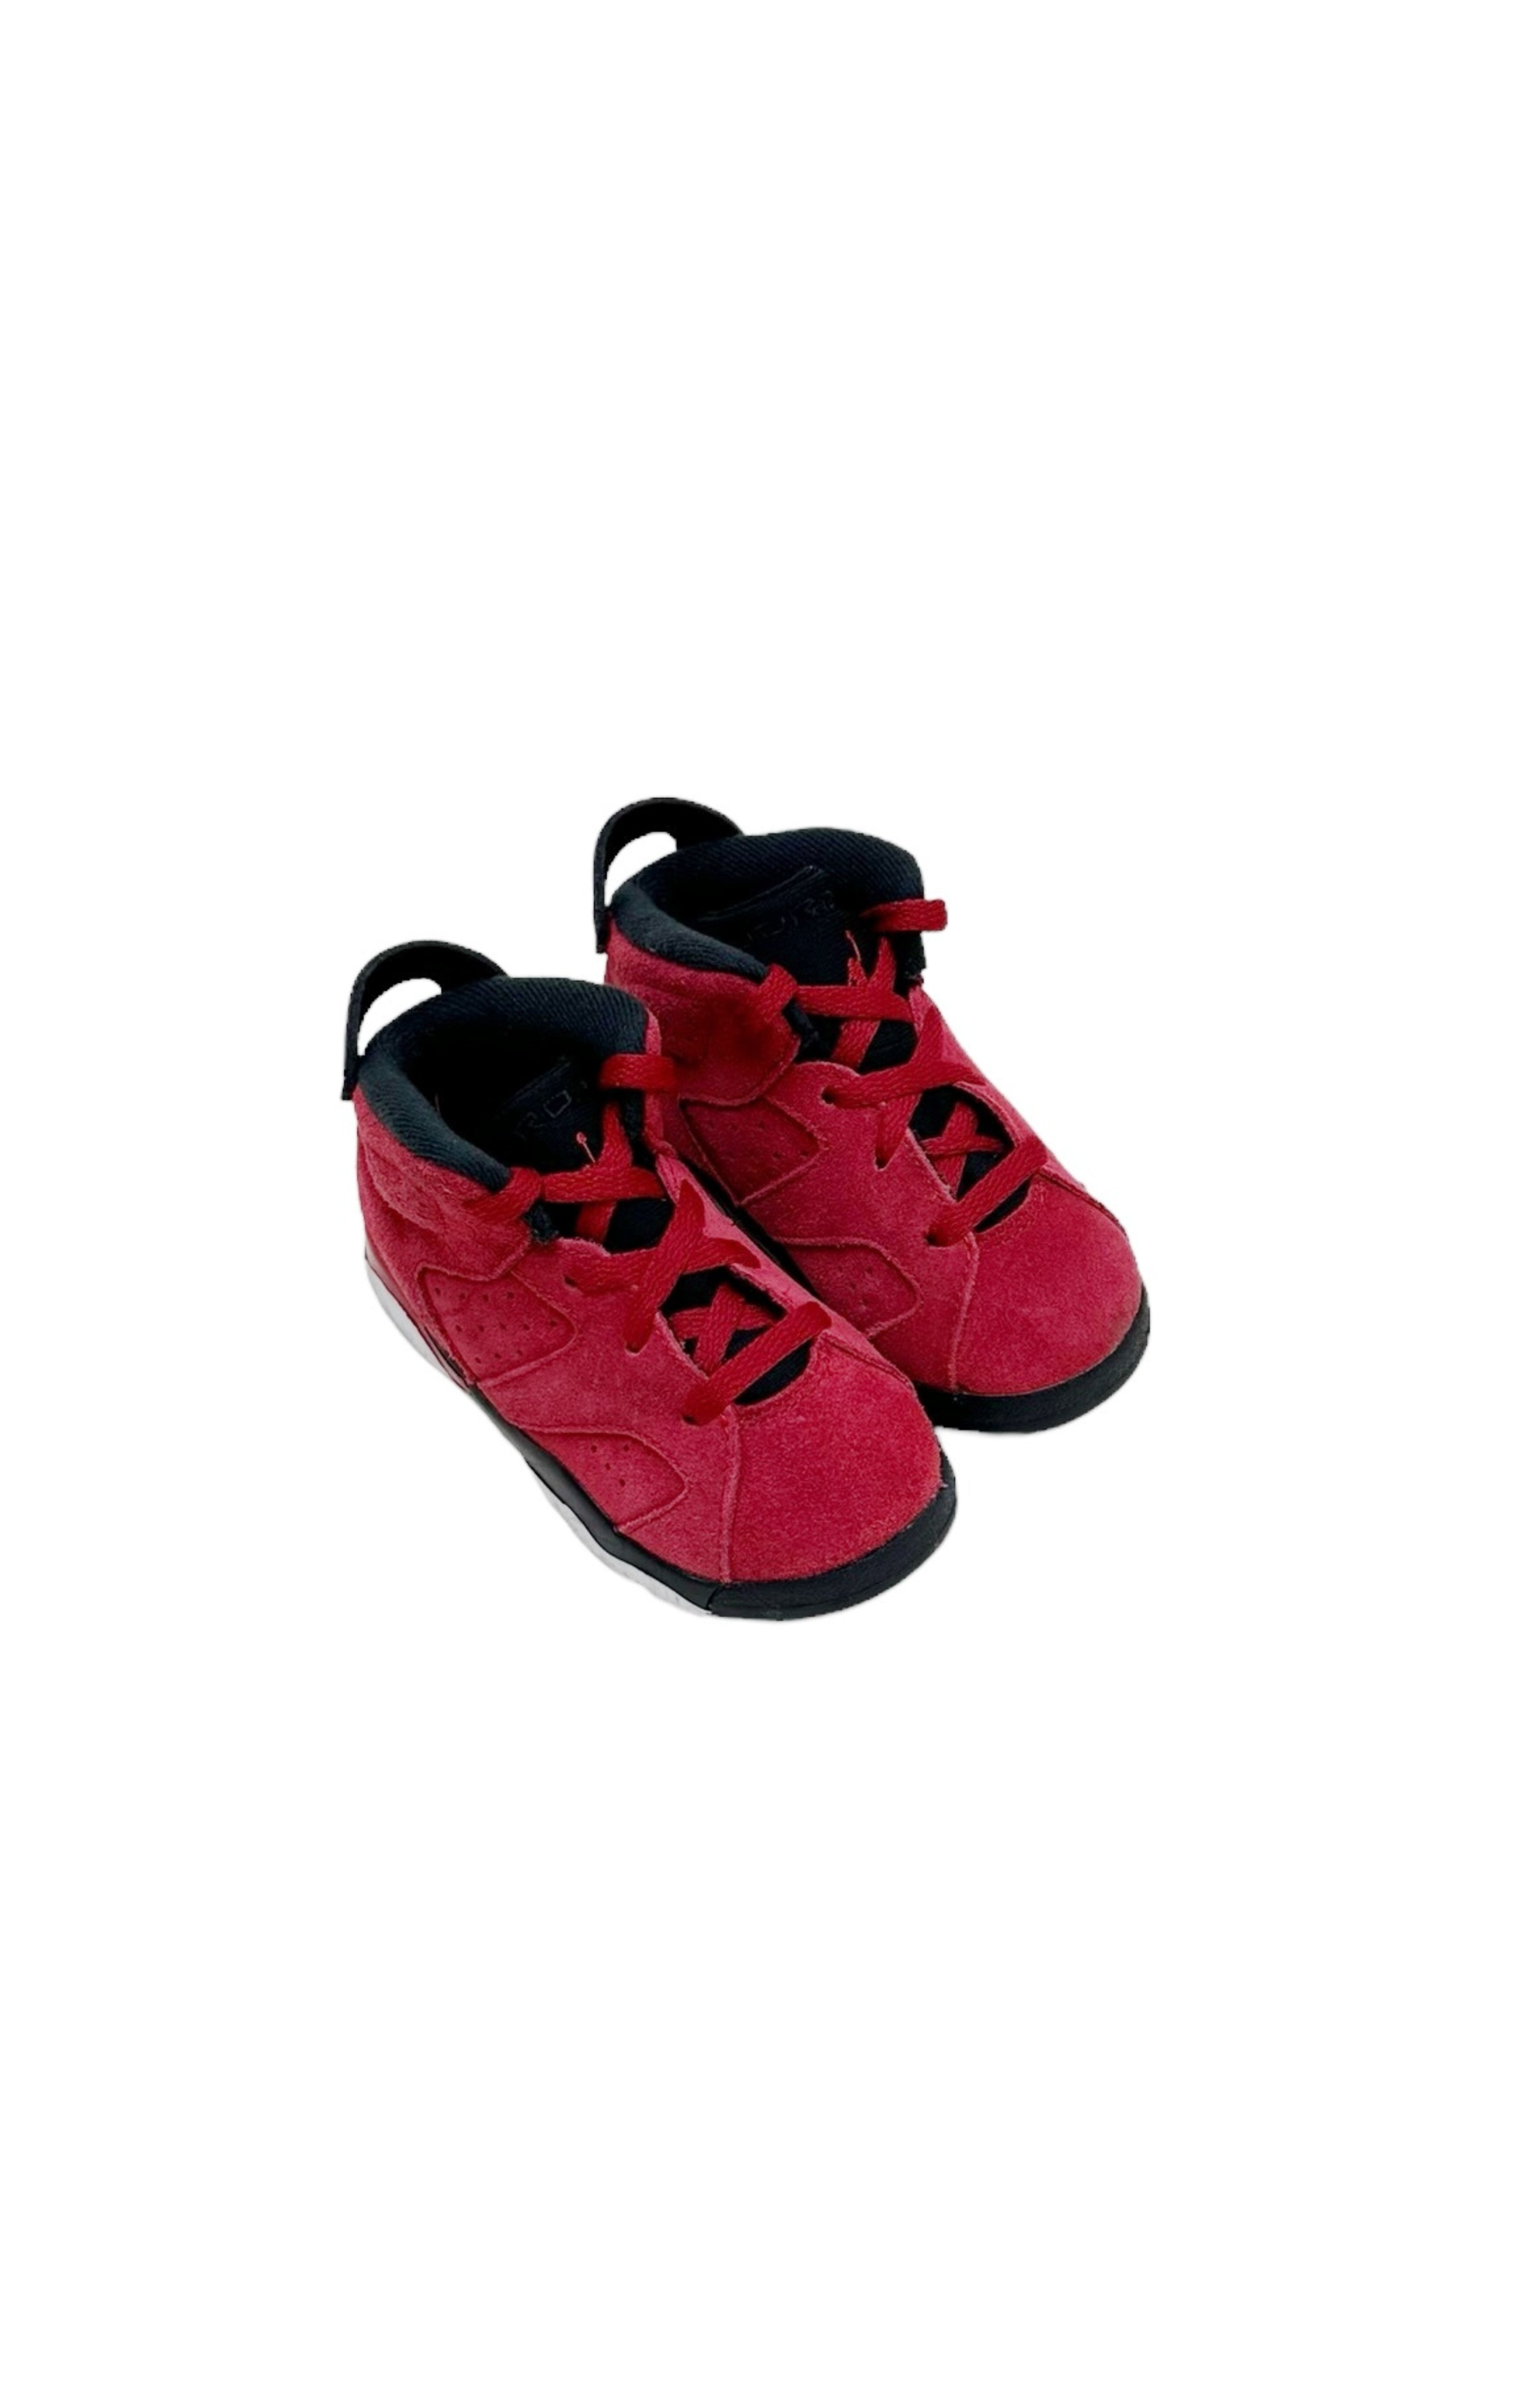 AIR JORDAN Sneakers Size: Infant US 7C